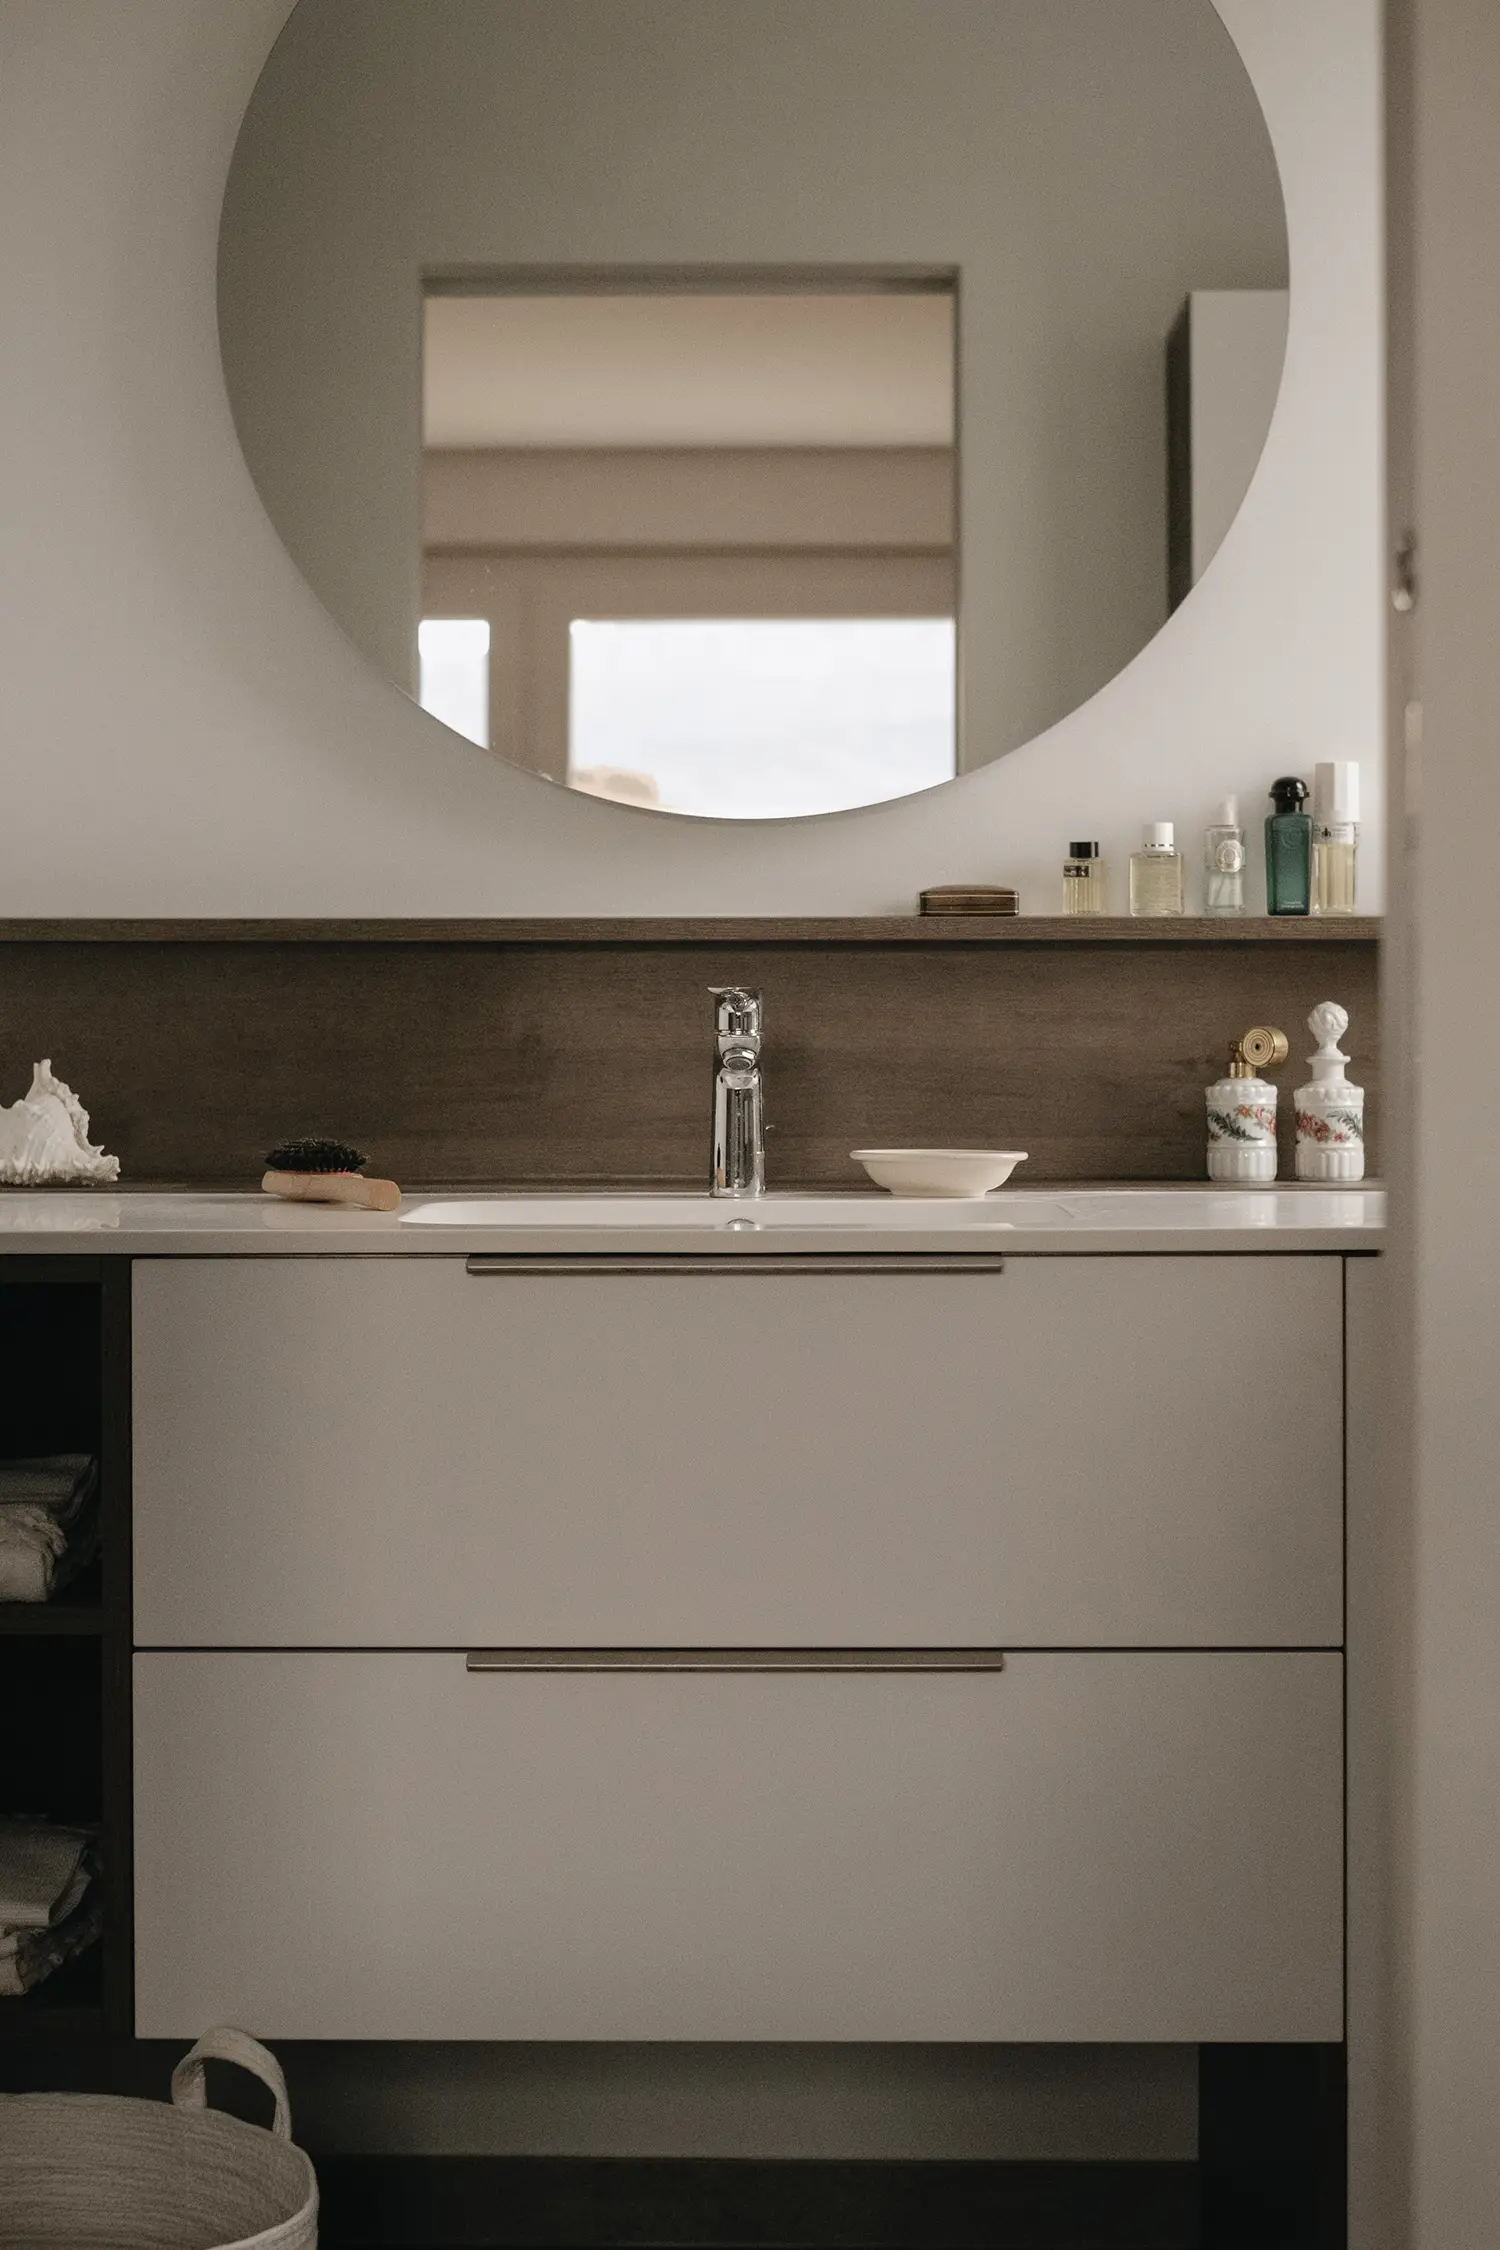 Photo d'ensemble de la salle de bain dans les mêmes tons de blanc et de bois utilisés pour la cuisine afin de créer un lien harmonieux ; projet de rénovation par Elles Interior Design studio.